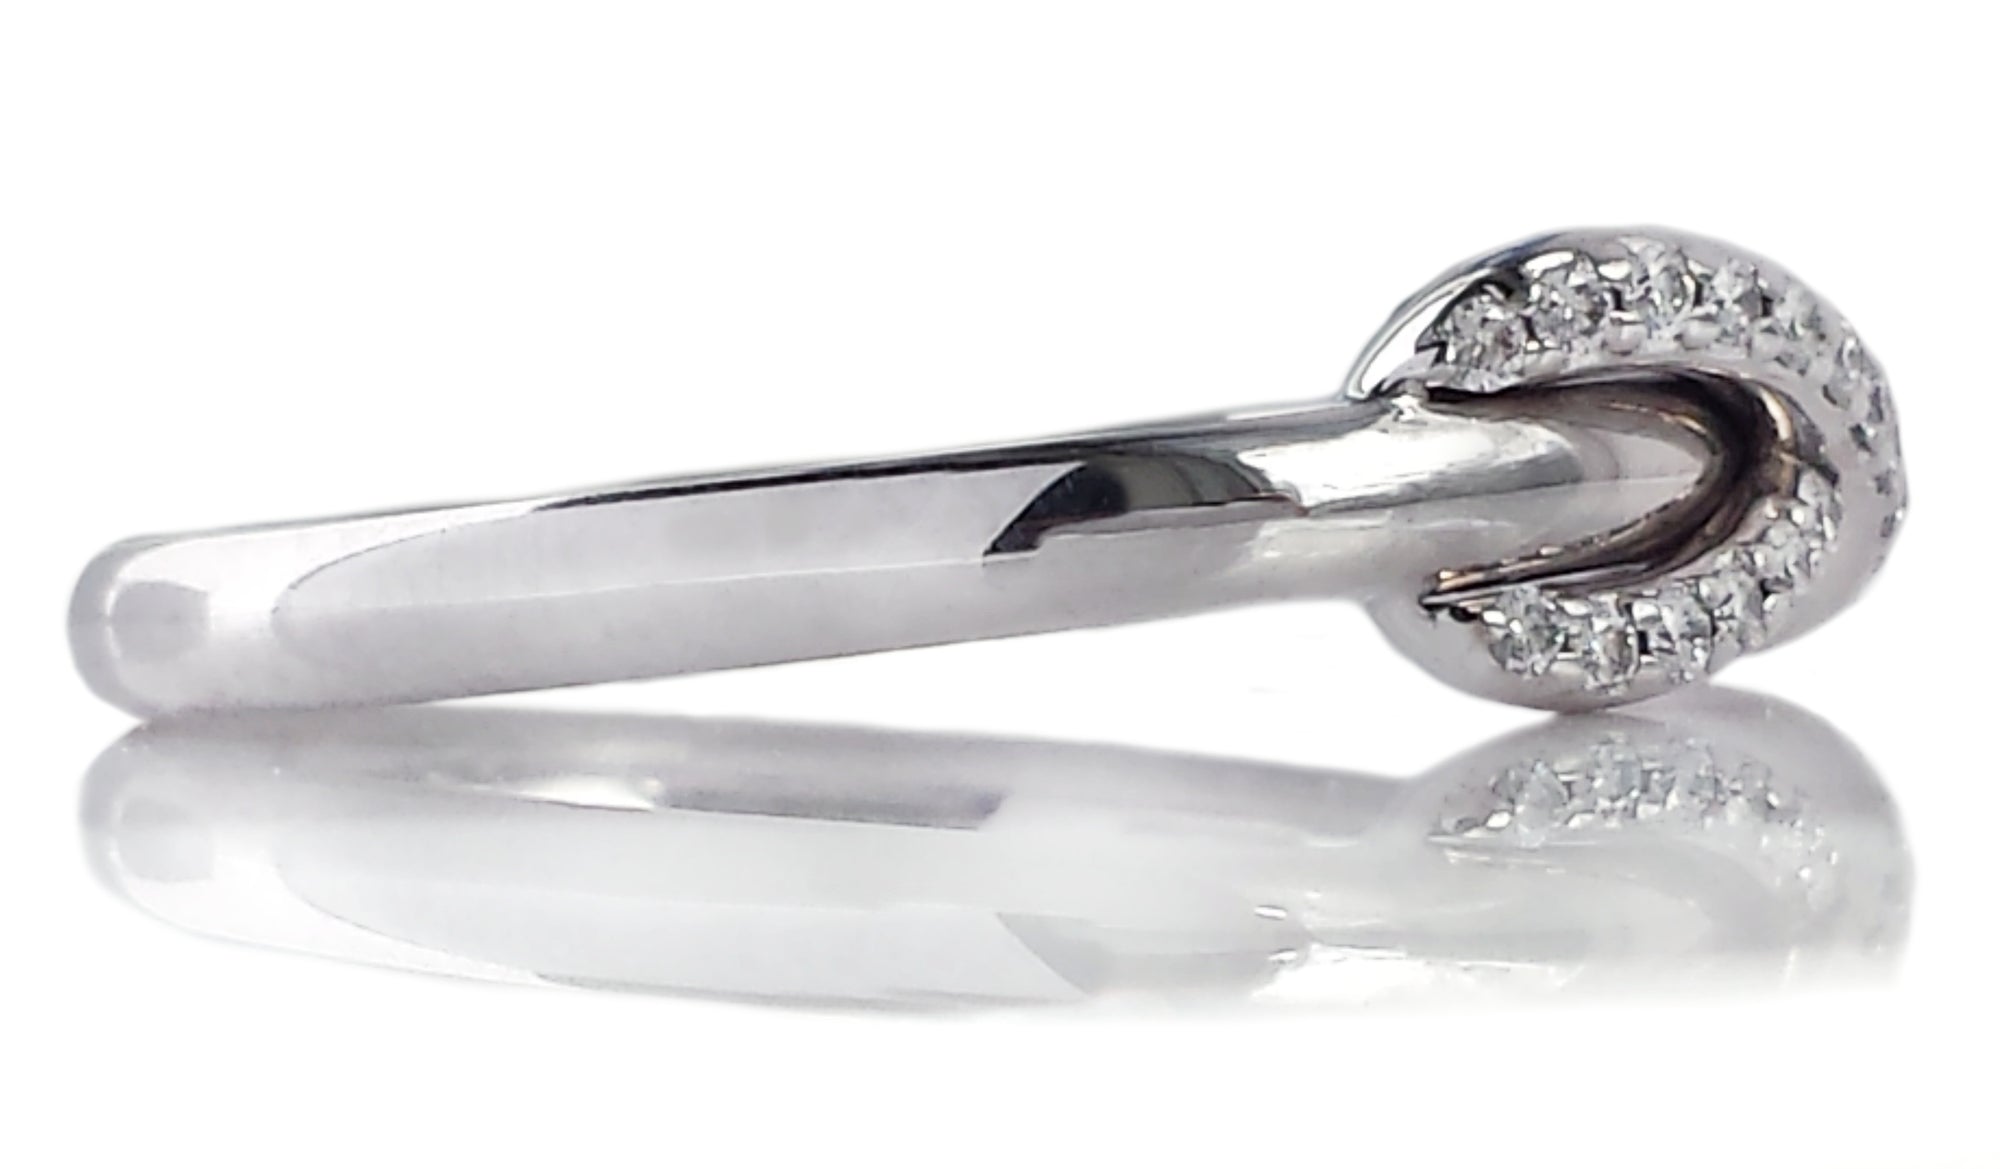 Tiffany & Co Infinity Diamond Ring 750 SZ O 1/2